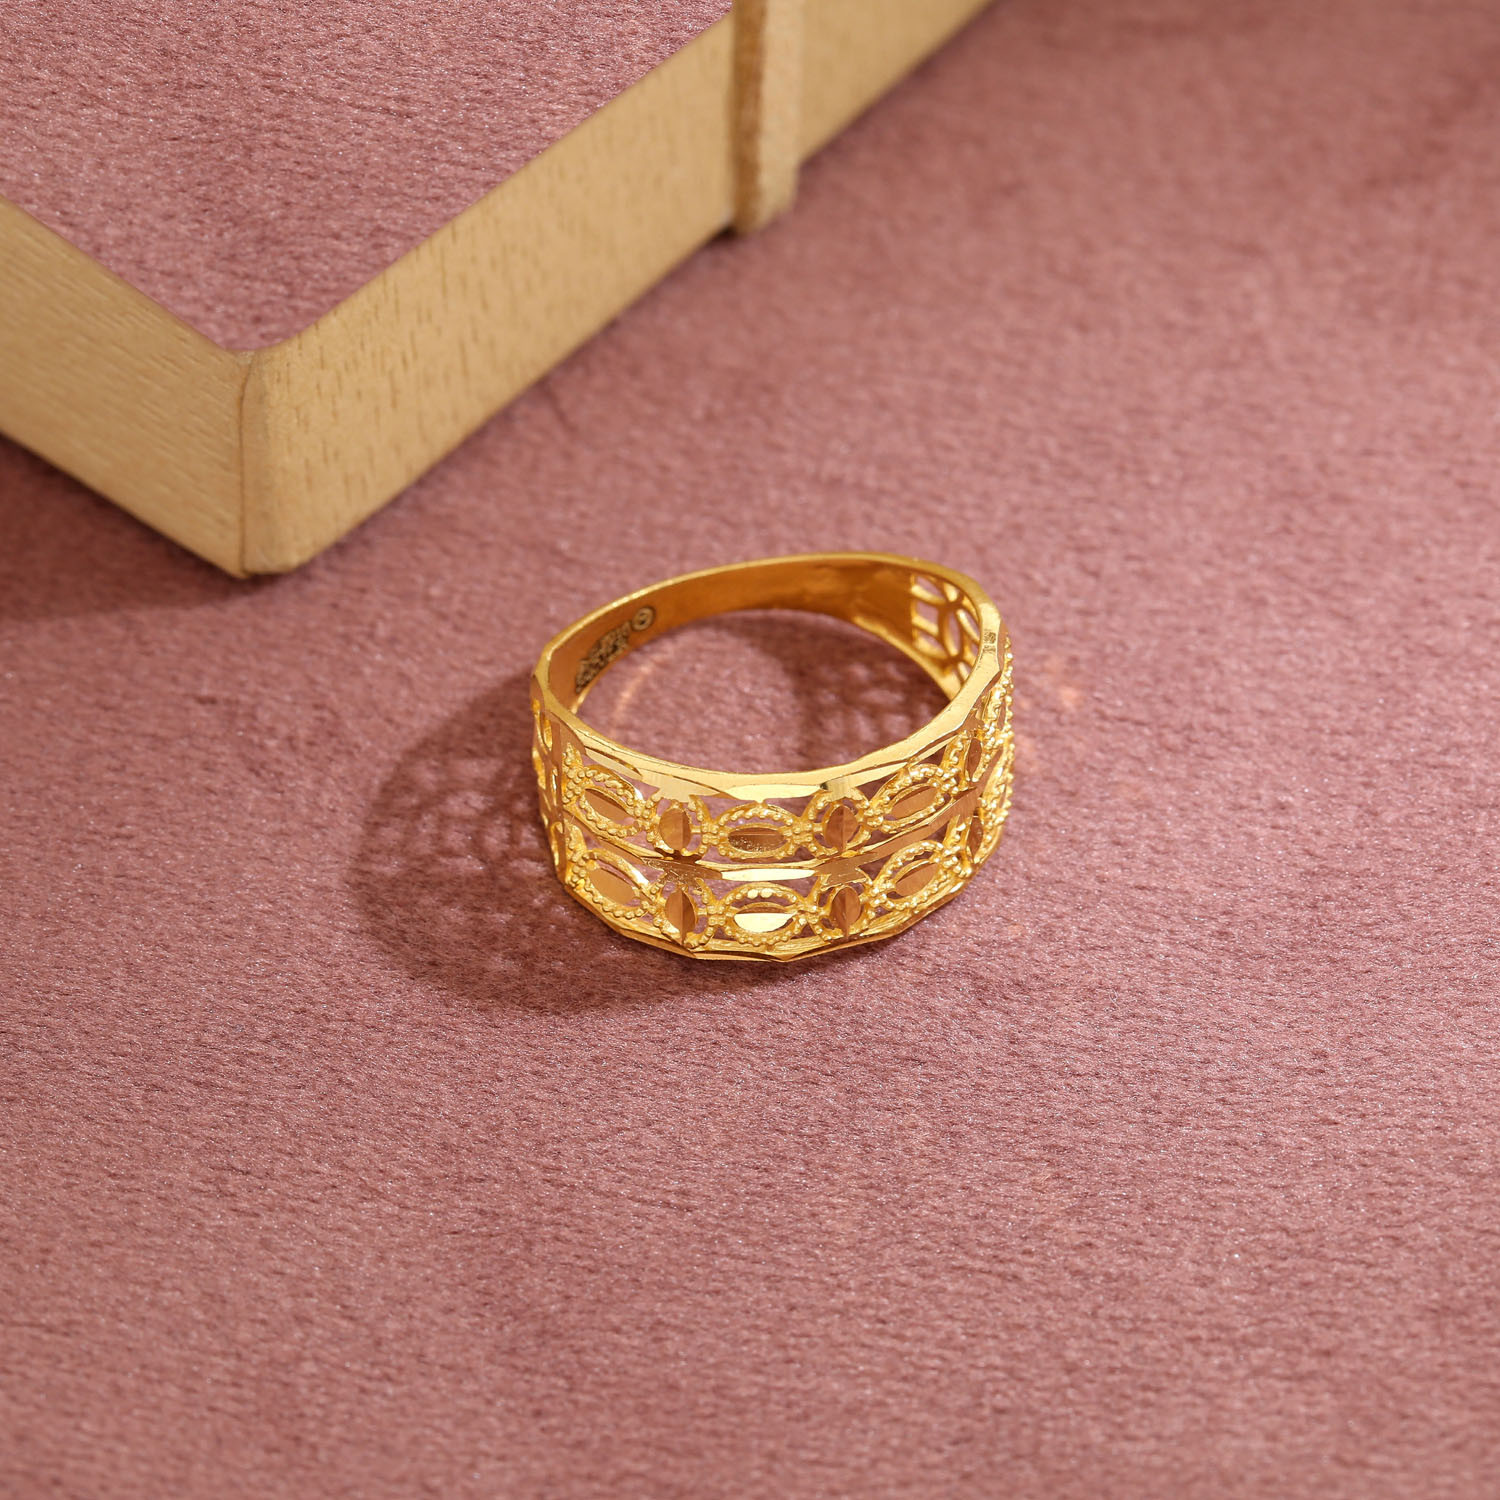 Gold Ring design women - 2 grams Malabar Gold ring - 22kt gold ring with  price - Gold rings design - YouTube